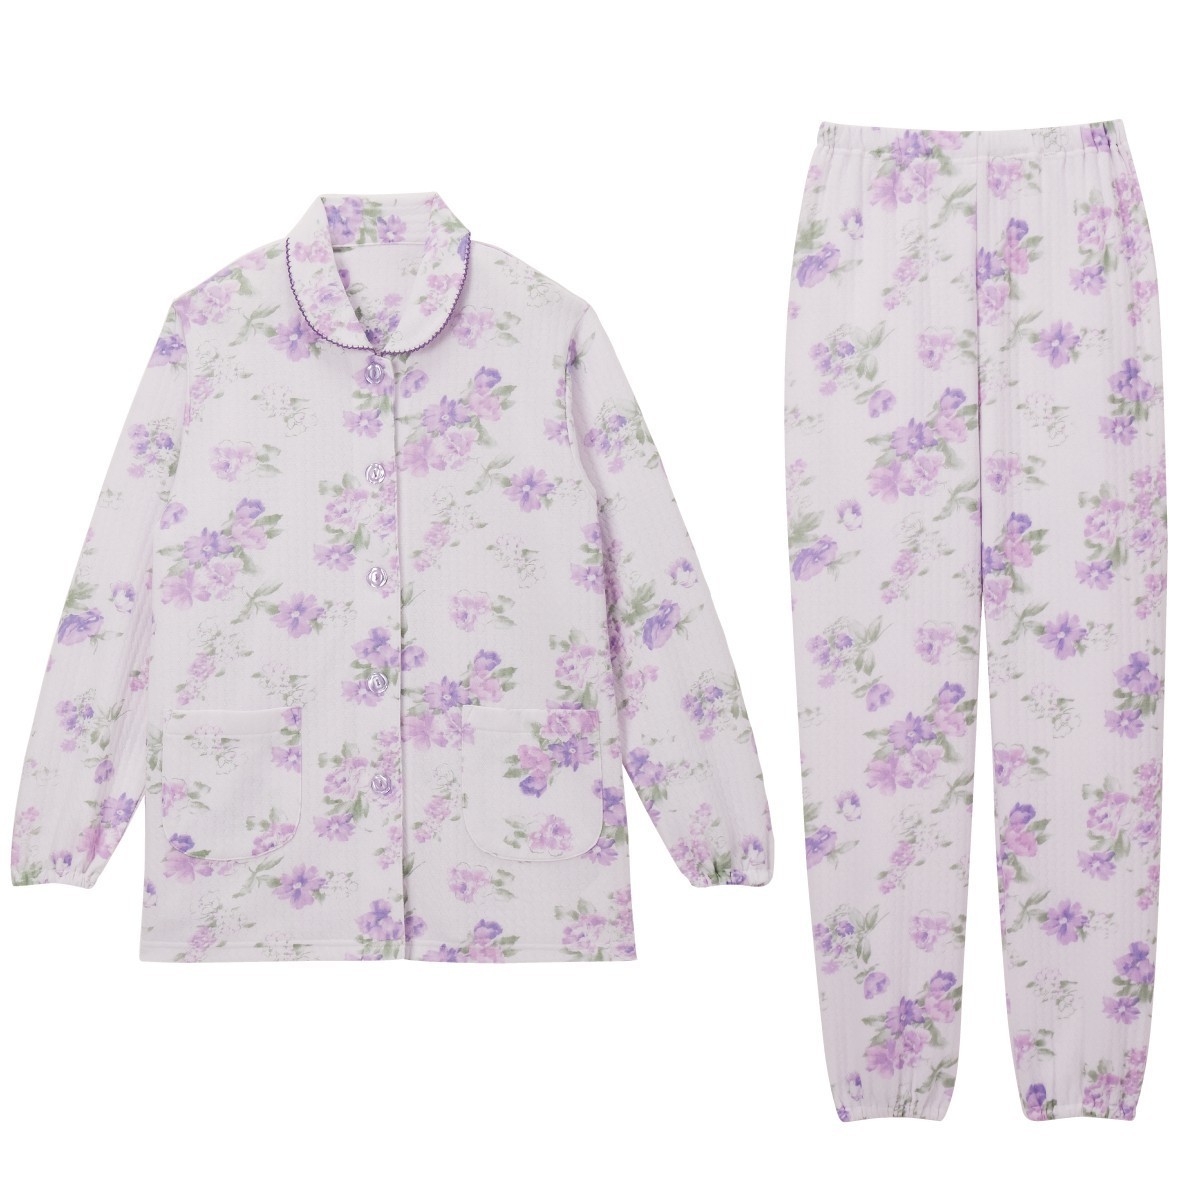 ふんわりキルト暖かパジャマ 女性 シニア パジャマ 裾ゴム 大きめボタン ルームウェア レディース ...